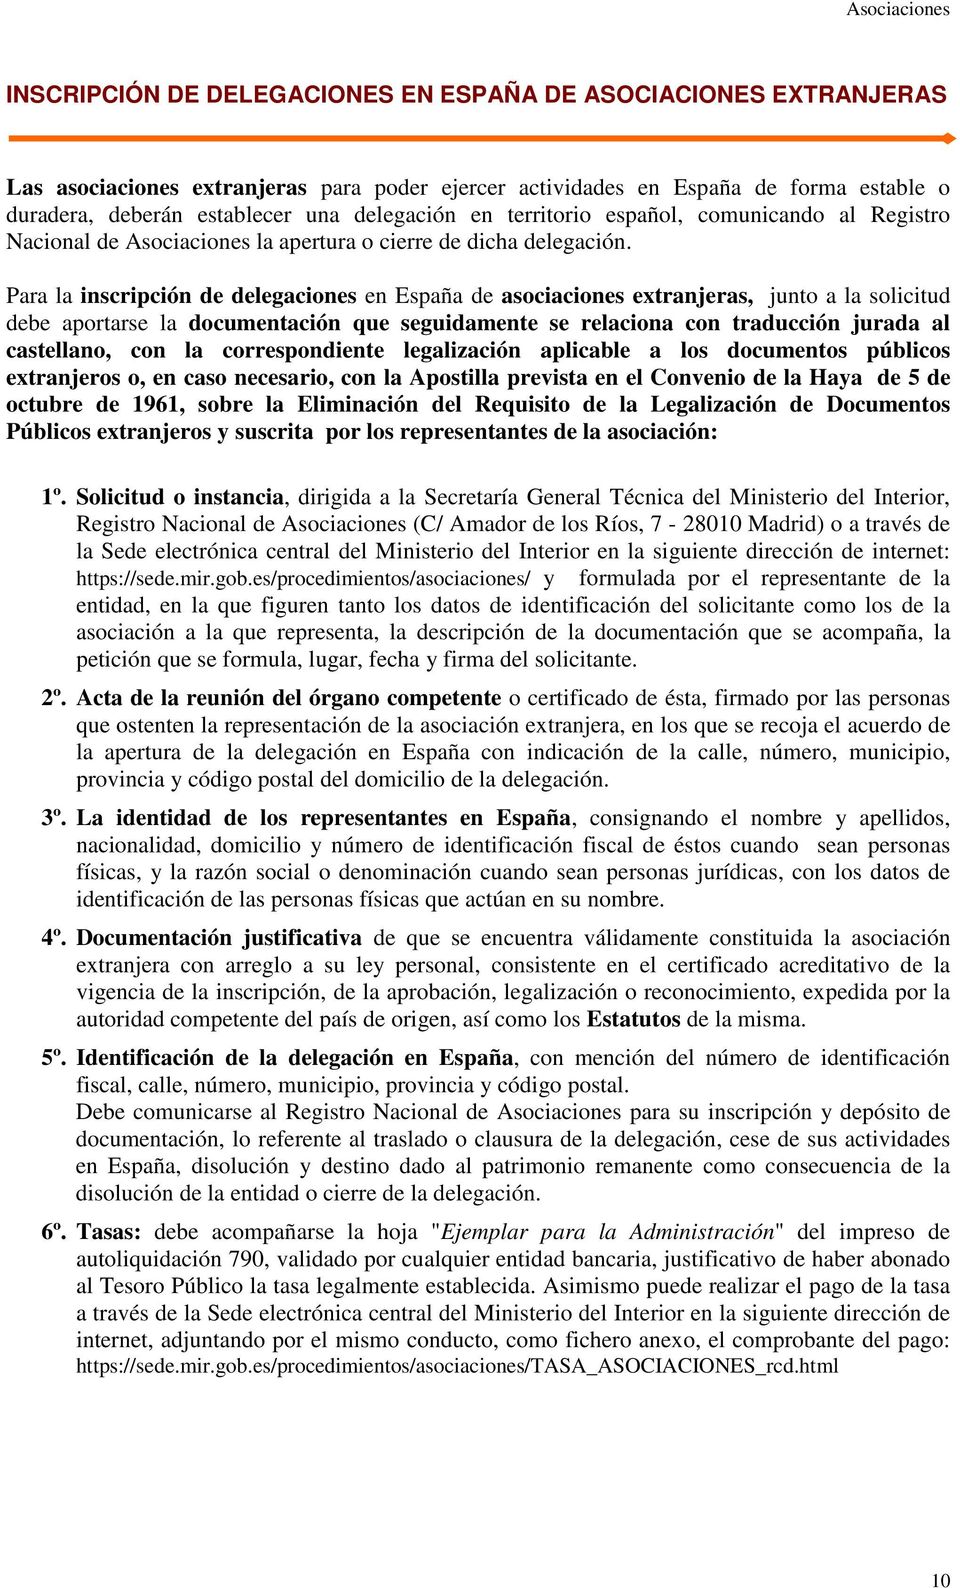 Para la inscripción de delegaciones en España de asociaciones extranjeras, junto a la solicitud debe aportarse la documentación que seguidamente se relaciona con traducción jurada al castellano, con